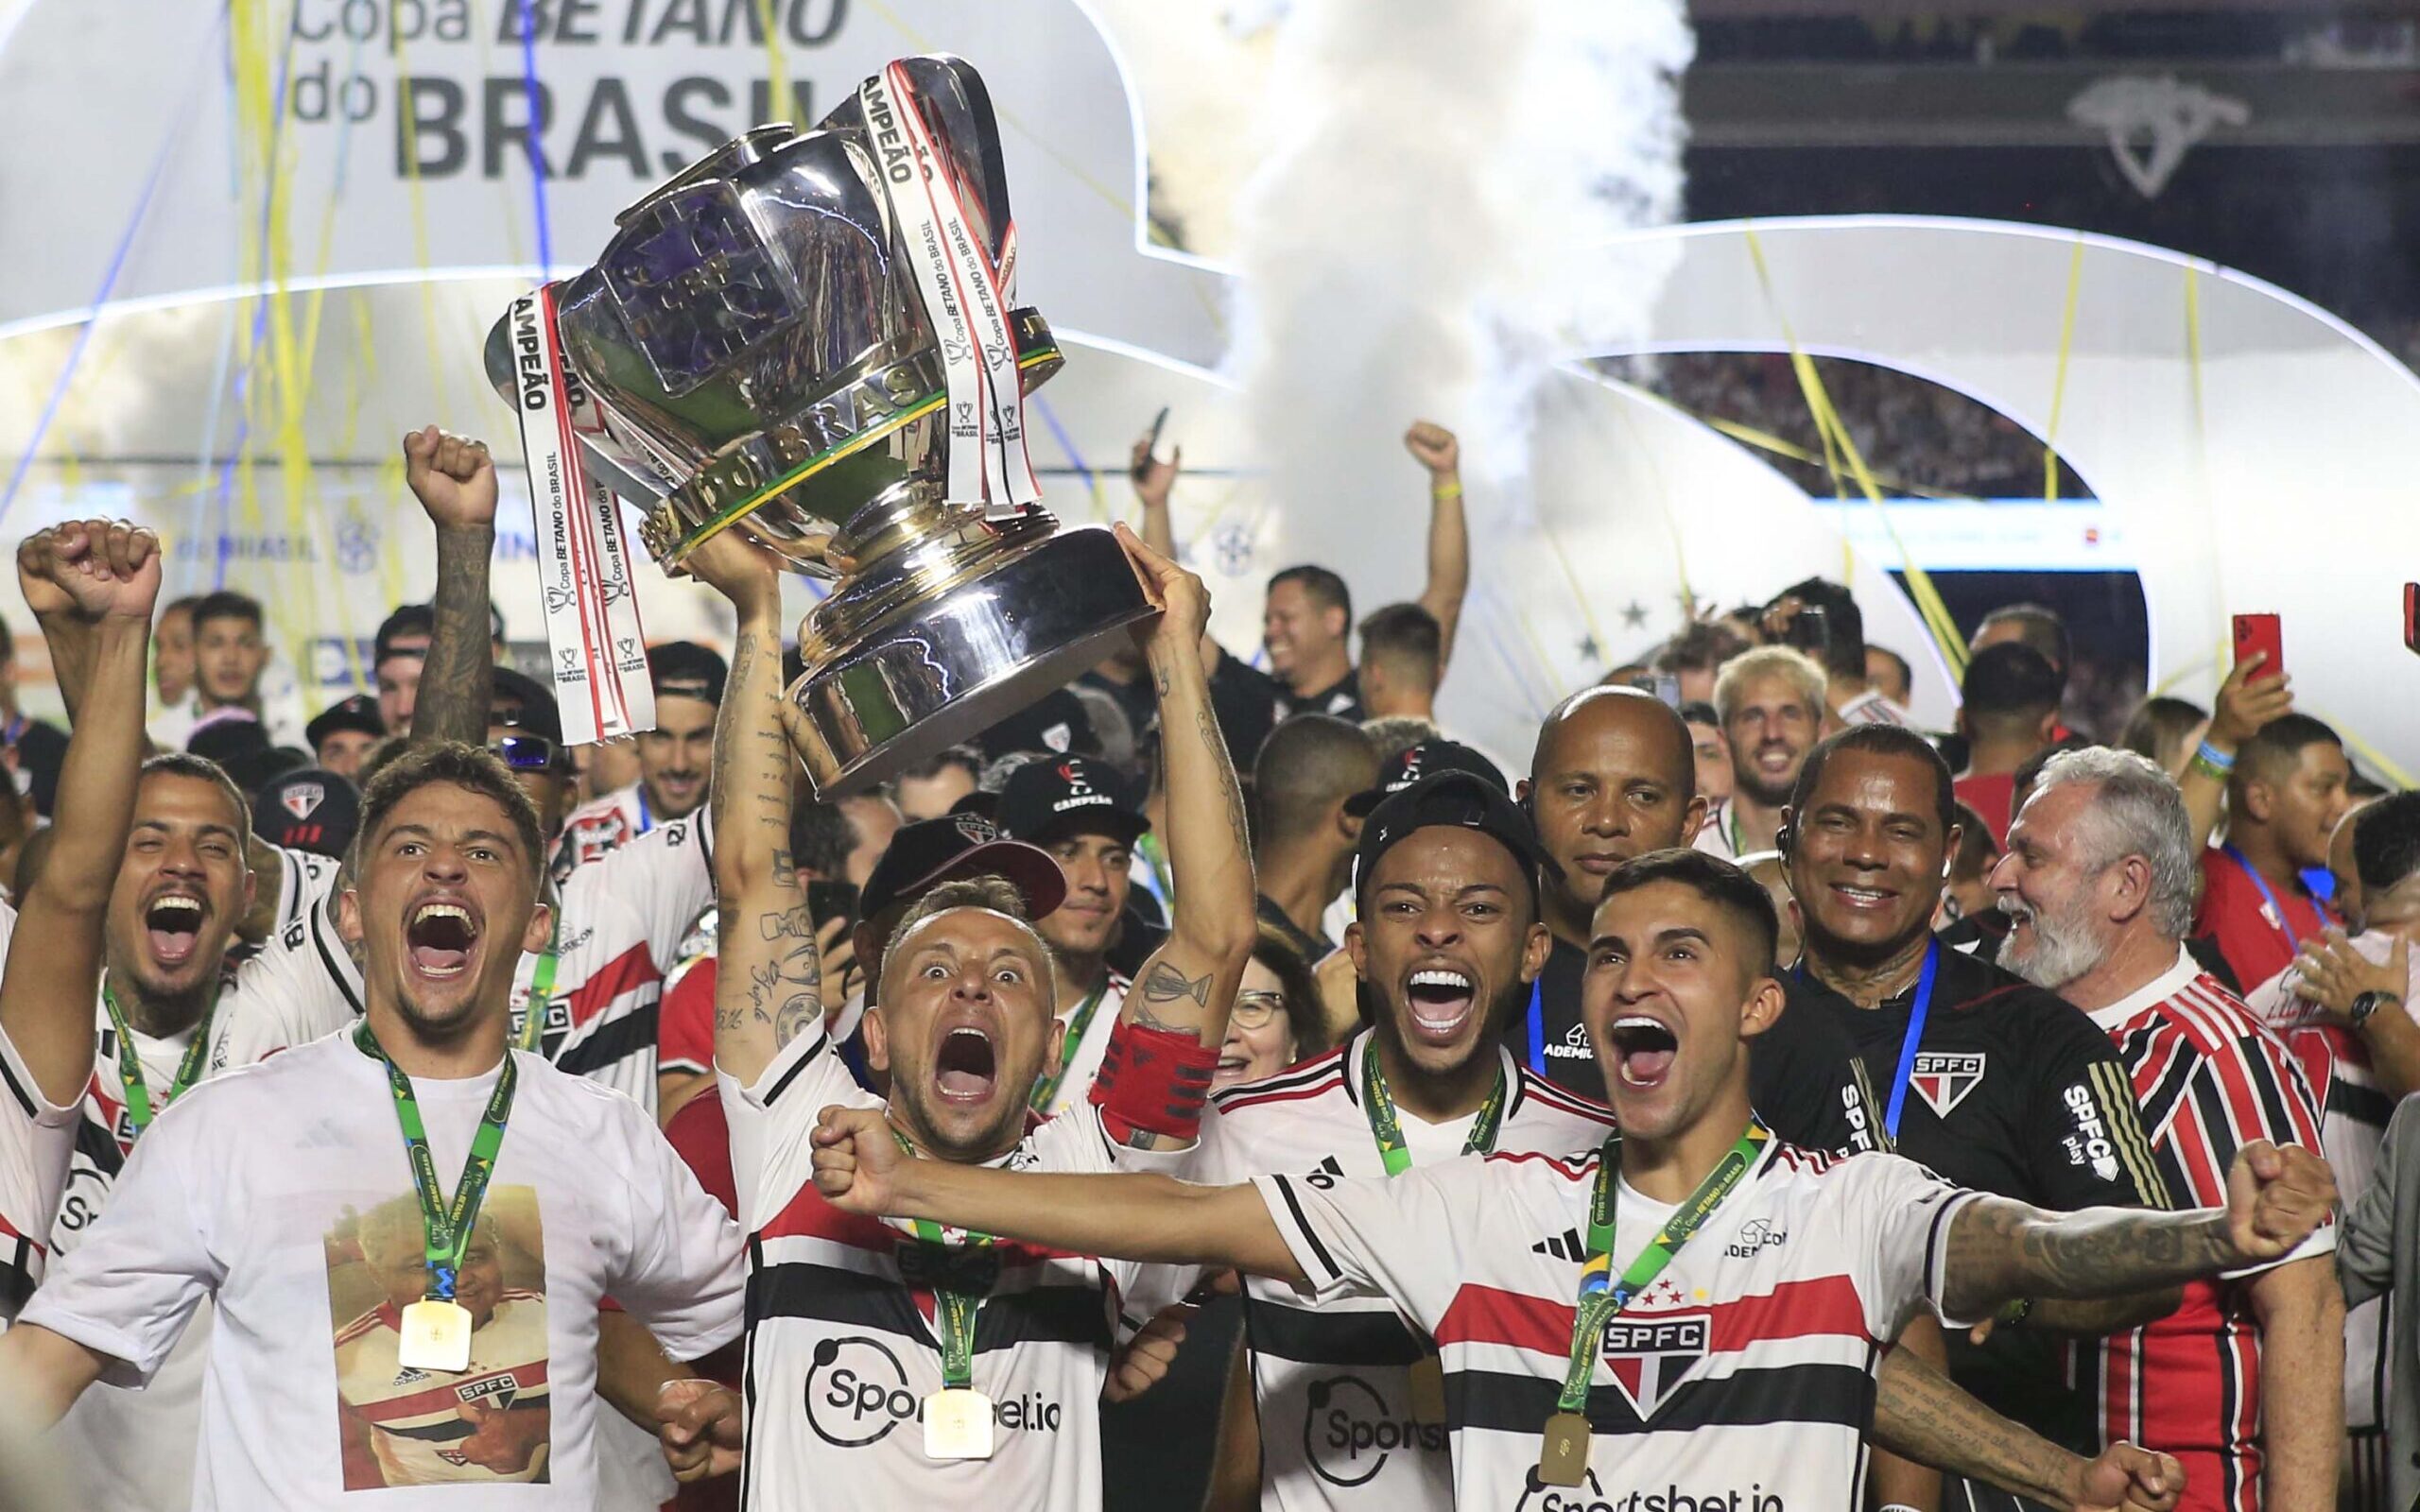 São Paulo domina a seleção da Copa do Brasil 2023; veja